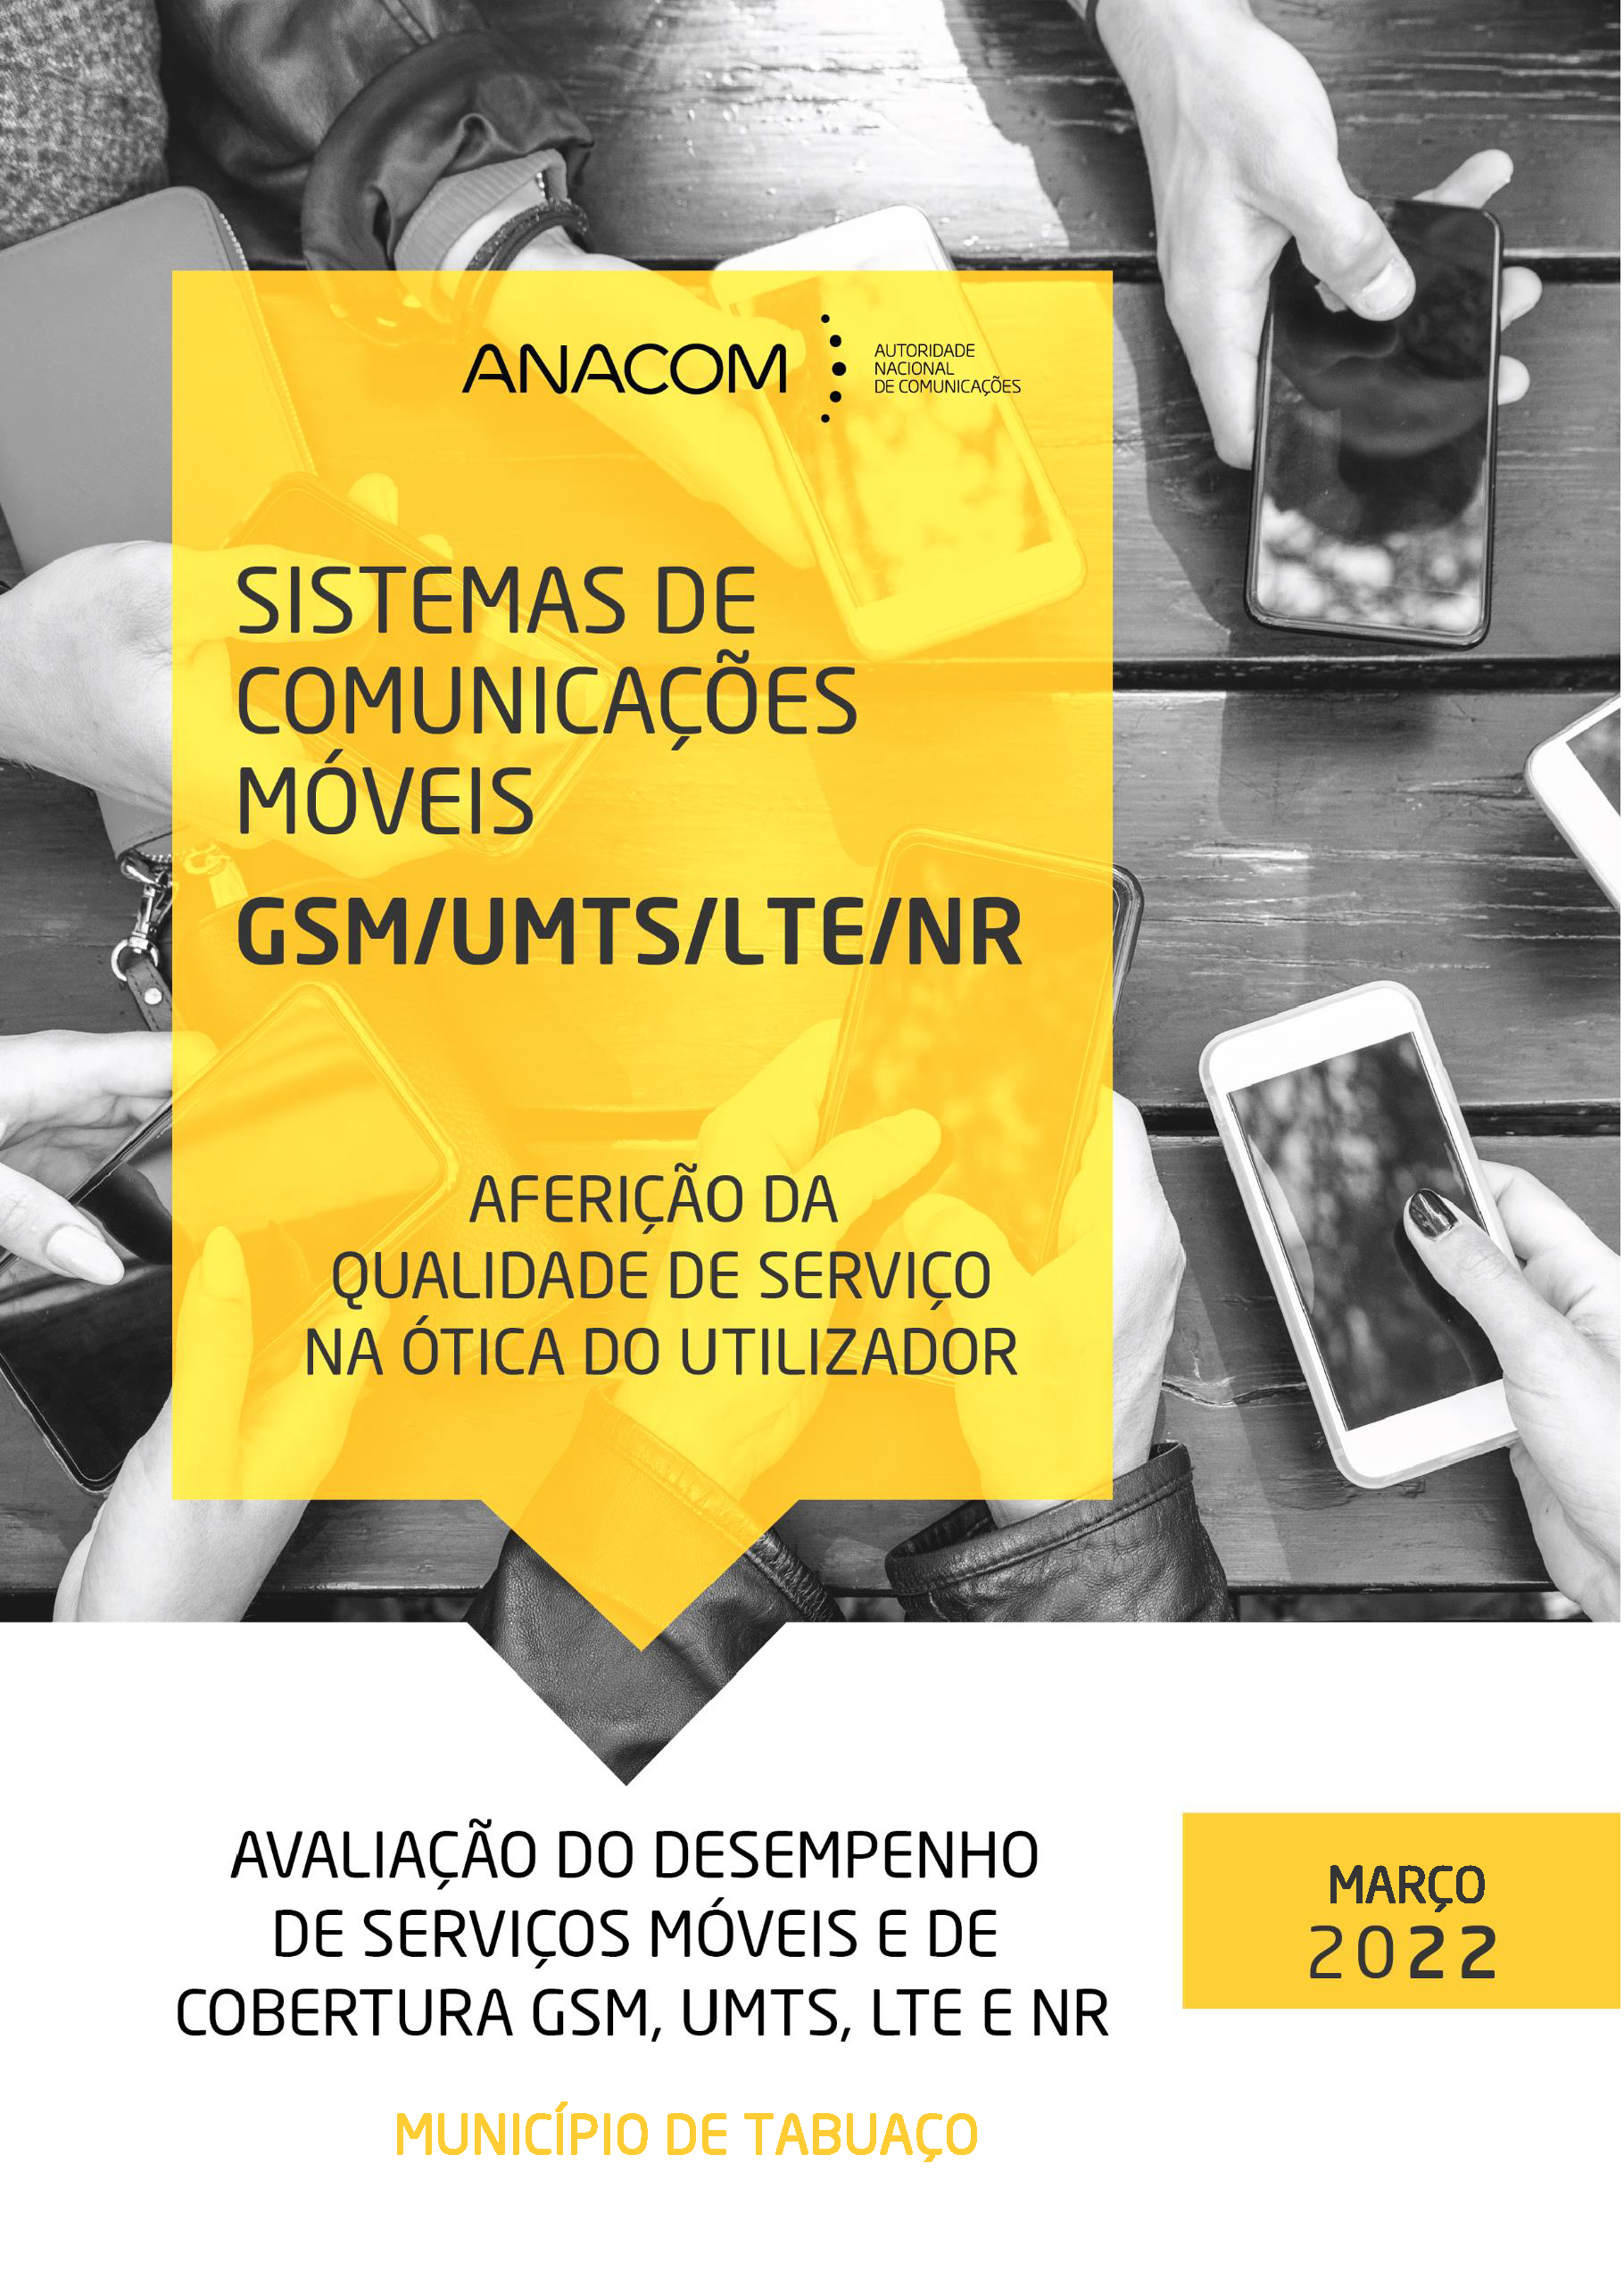 Avaliação do desempenho de serviços móveis e de cobertura GSM, UMTS, LTE e NR no Município de Tabuaço